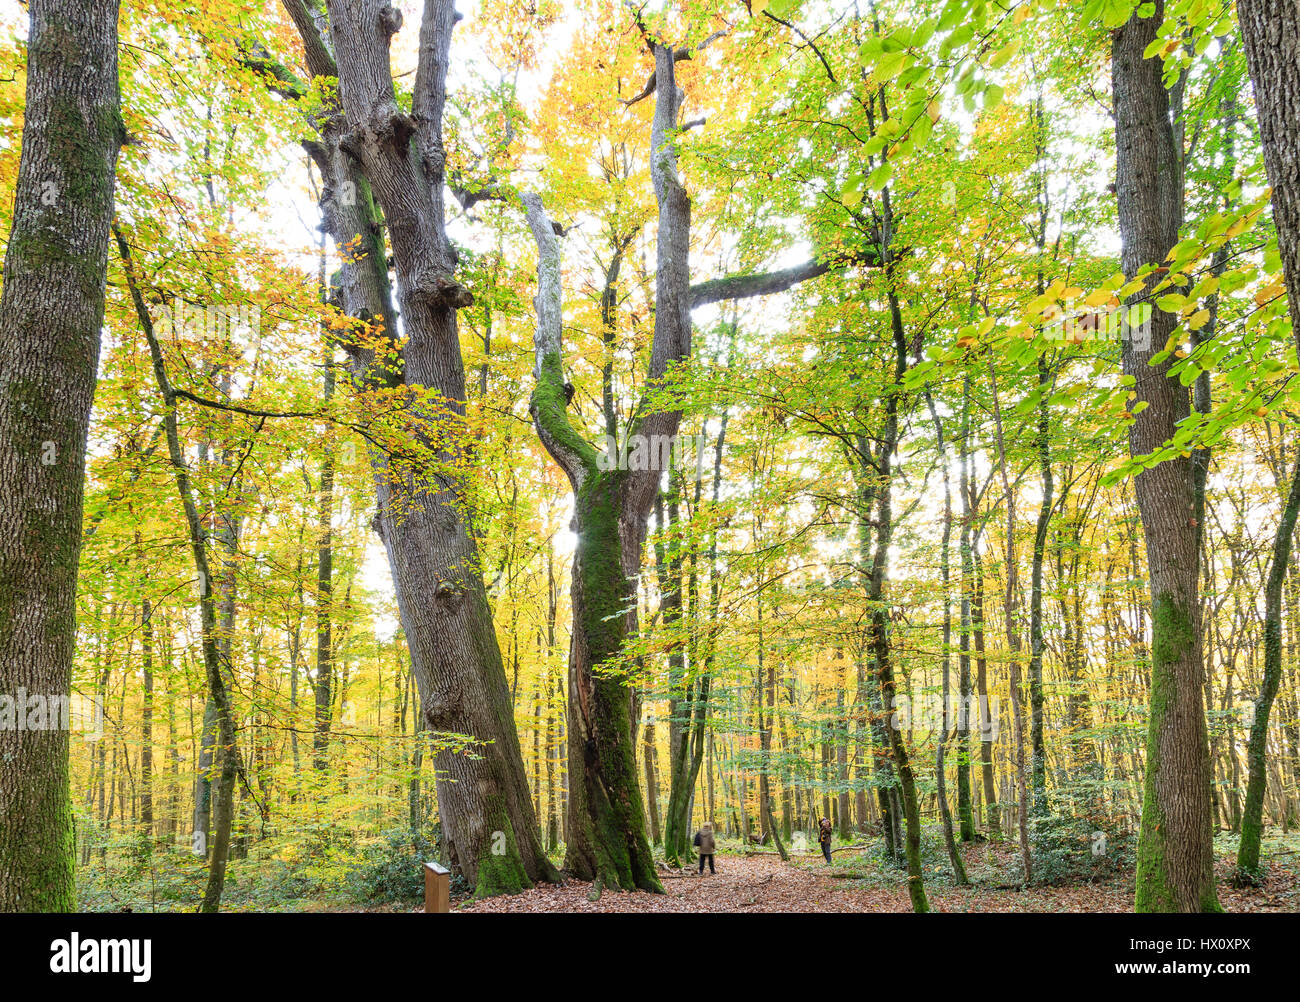 La France, l'Allier, forêt de Tronçais, Saint-Bonnet-Troncais remarkables sessiles, les chênes jumeaux (Quercus petraea) de début de XVIeme siècle Banque D'Images